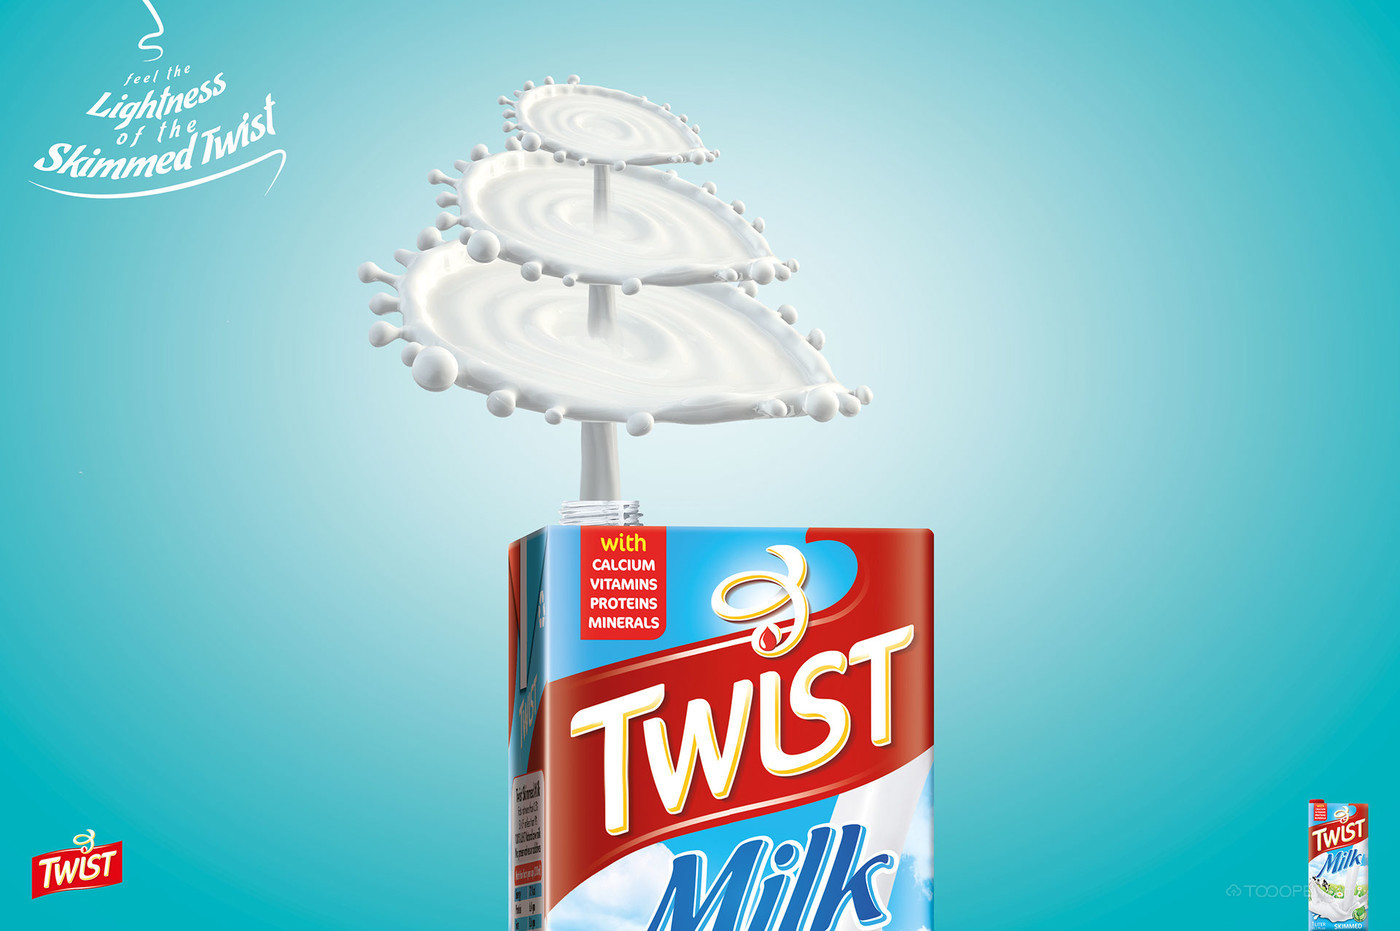 Twist牛奶海报设计作品欣赏-05